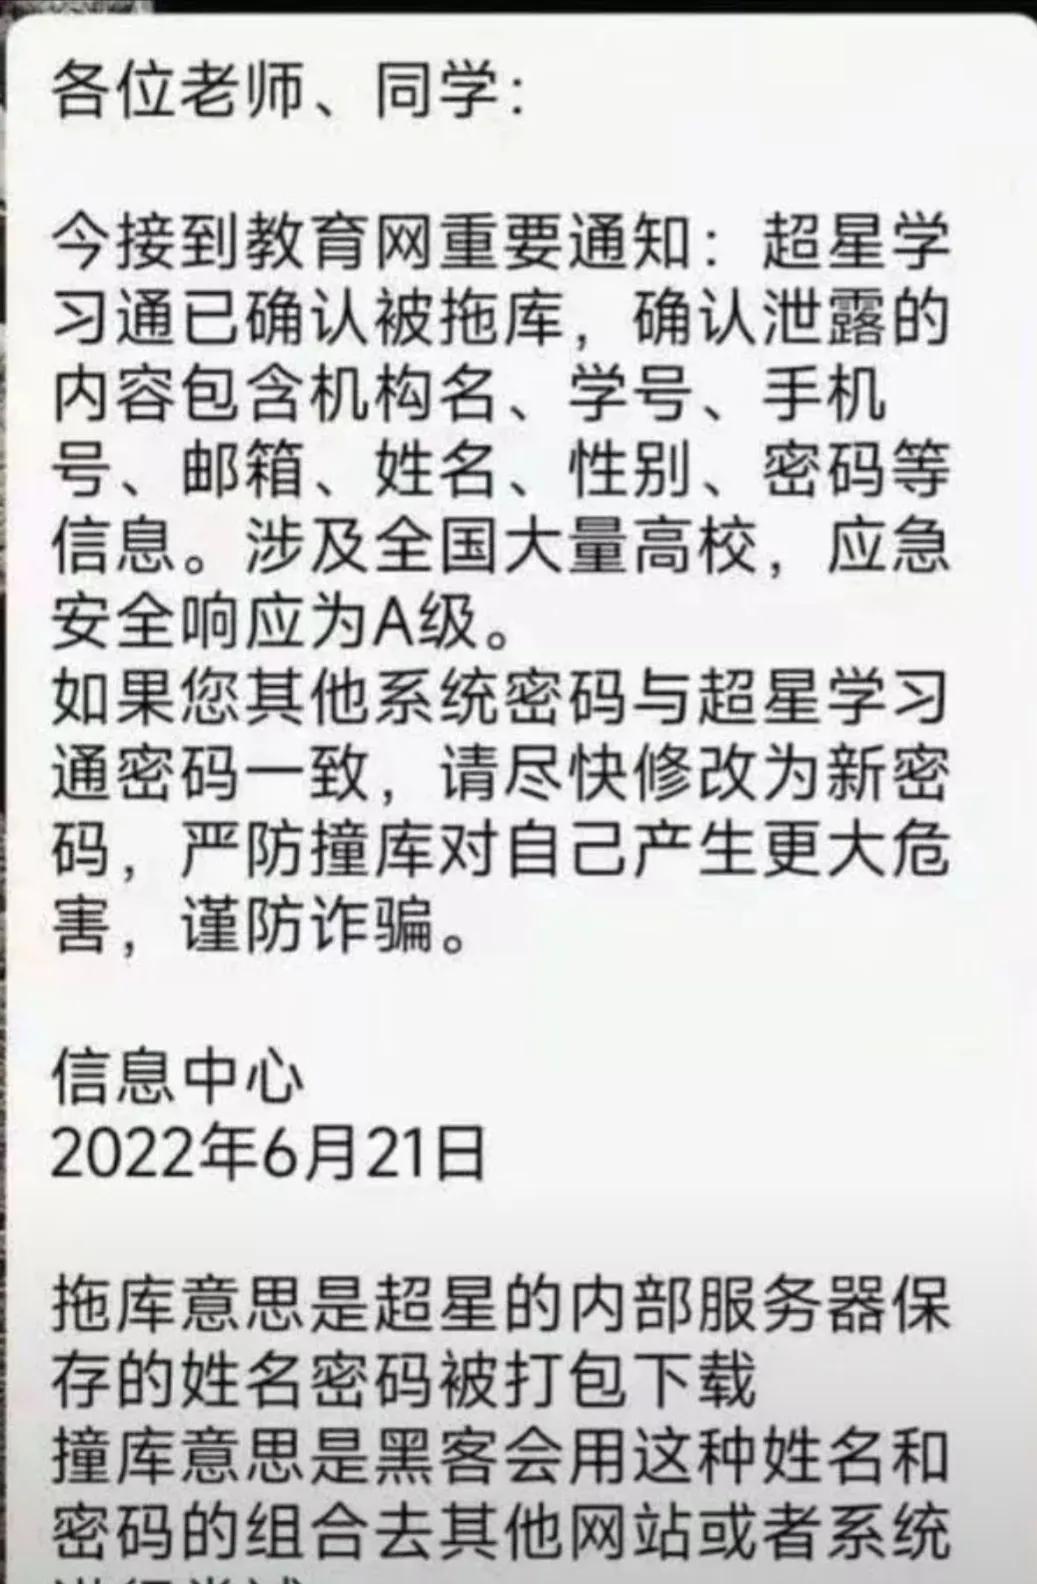 26日晚大量QQ被盗
，疑似学习通信息泄露